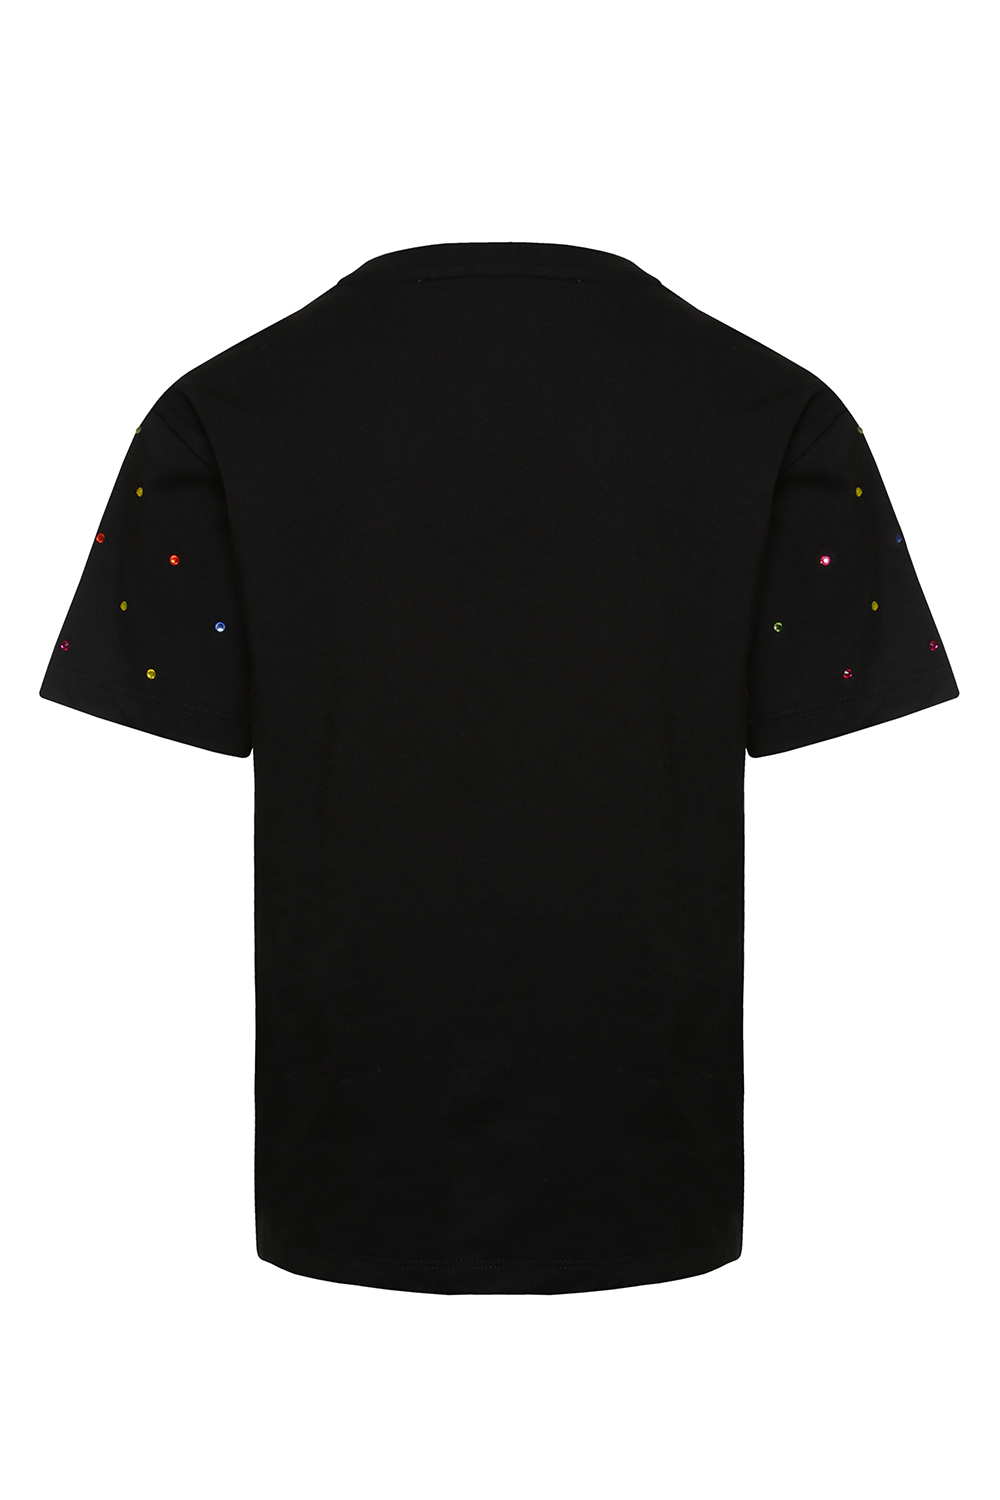 Черная футболка с разноцветными стразами